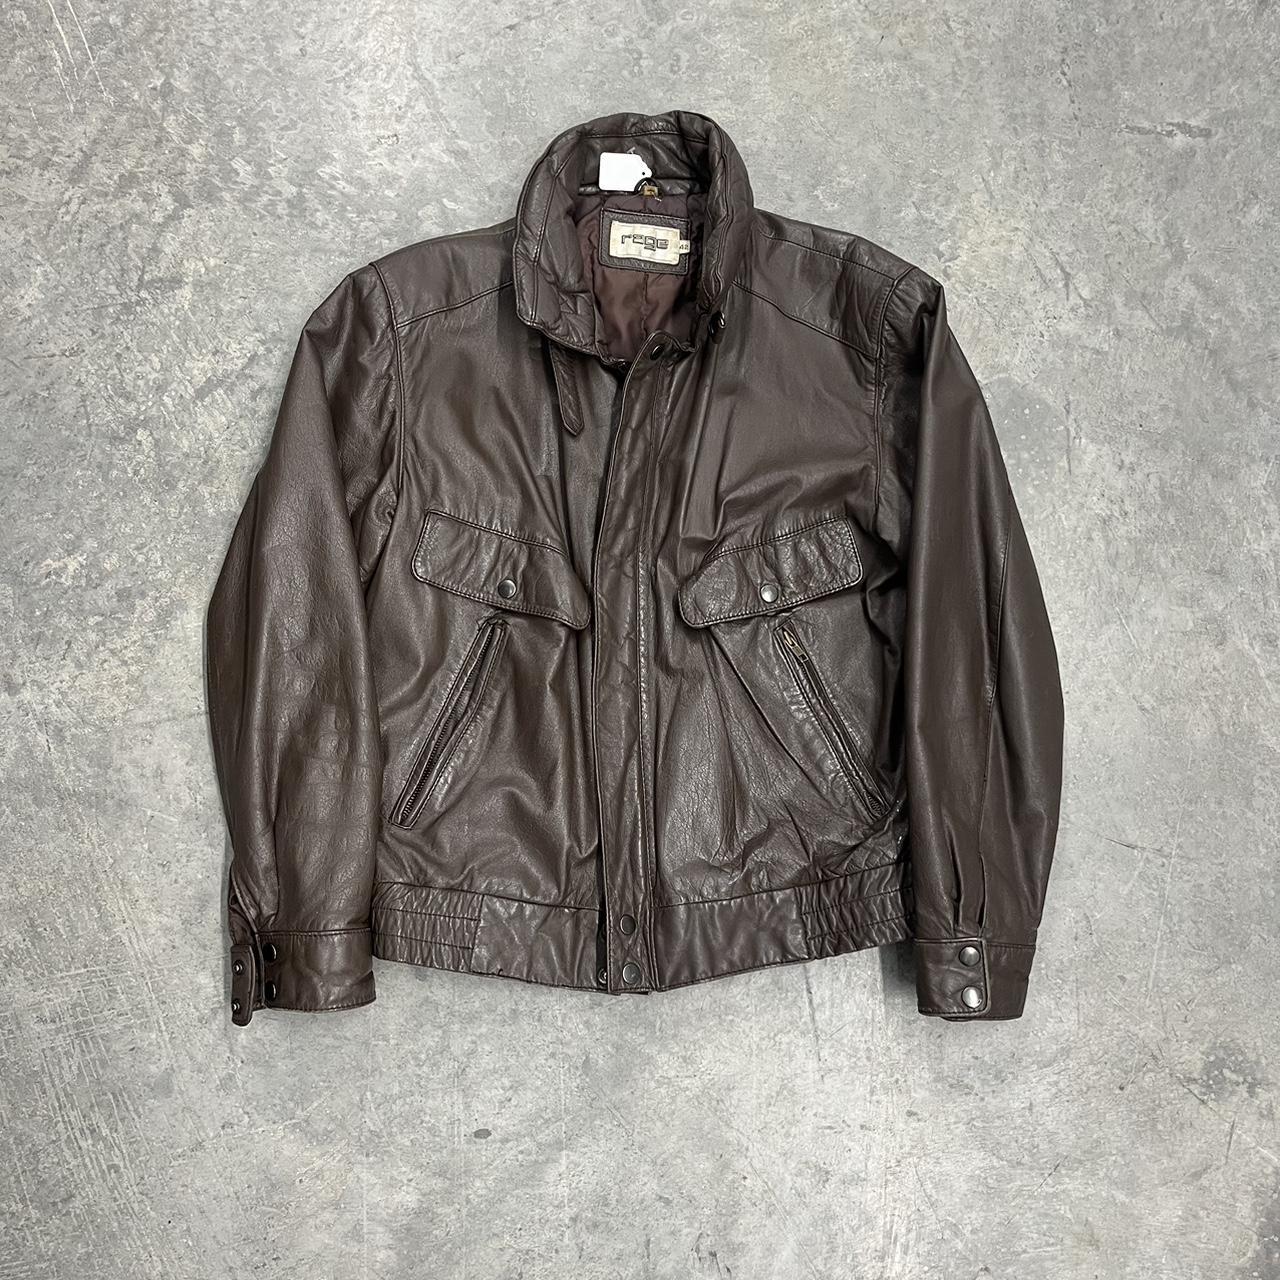 Vintage Genuine Leather Bomber Jacket -Good... - Depop